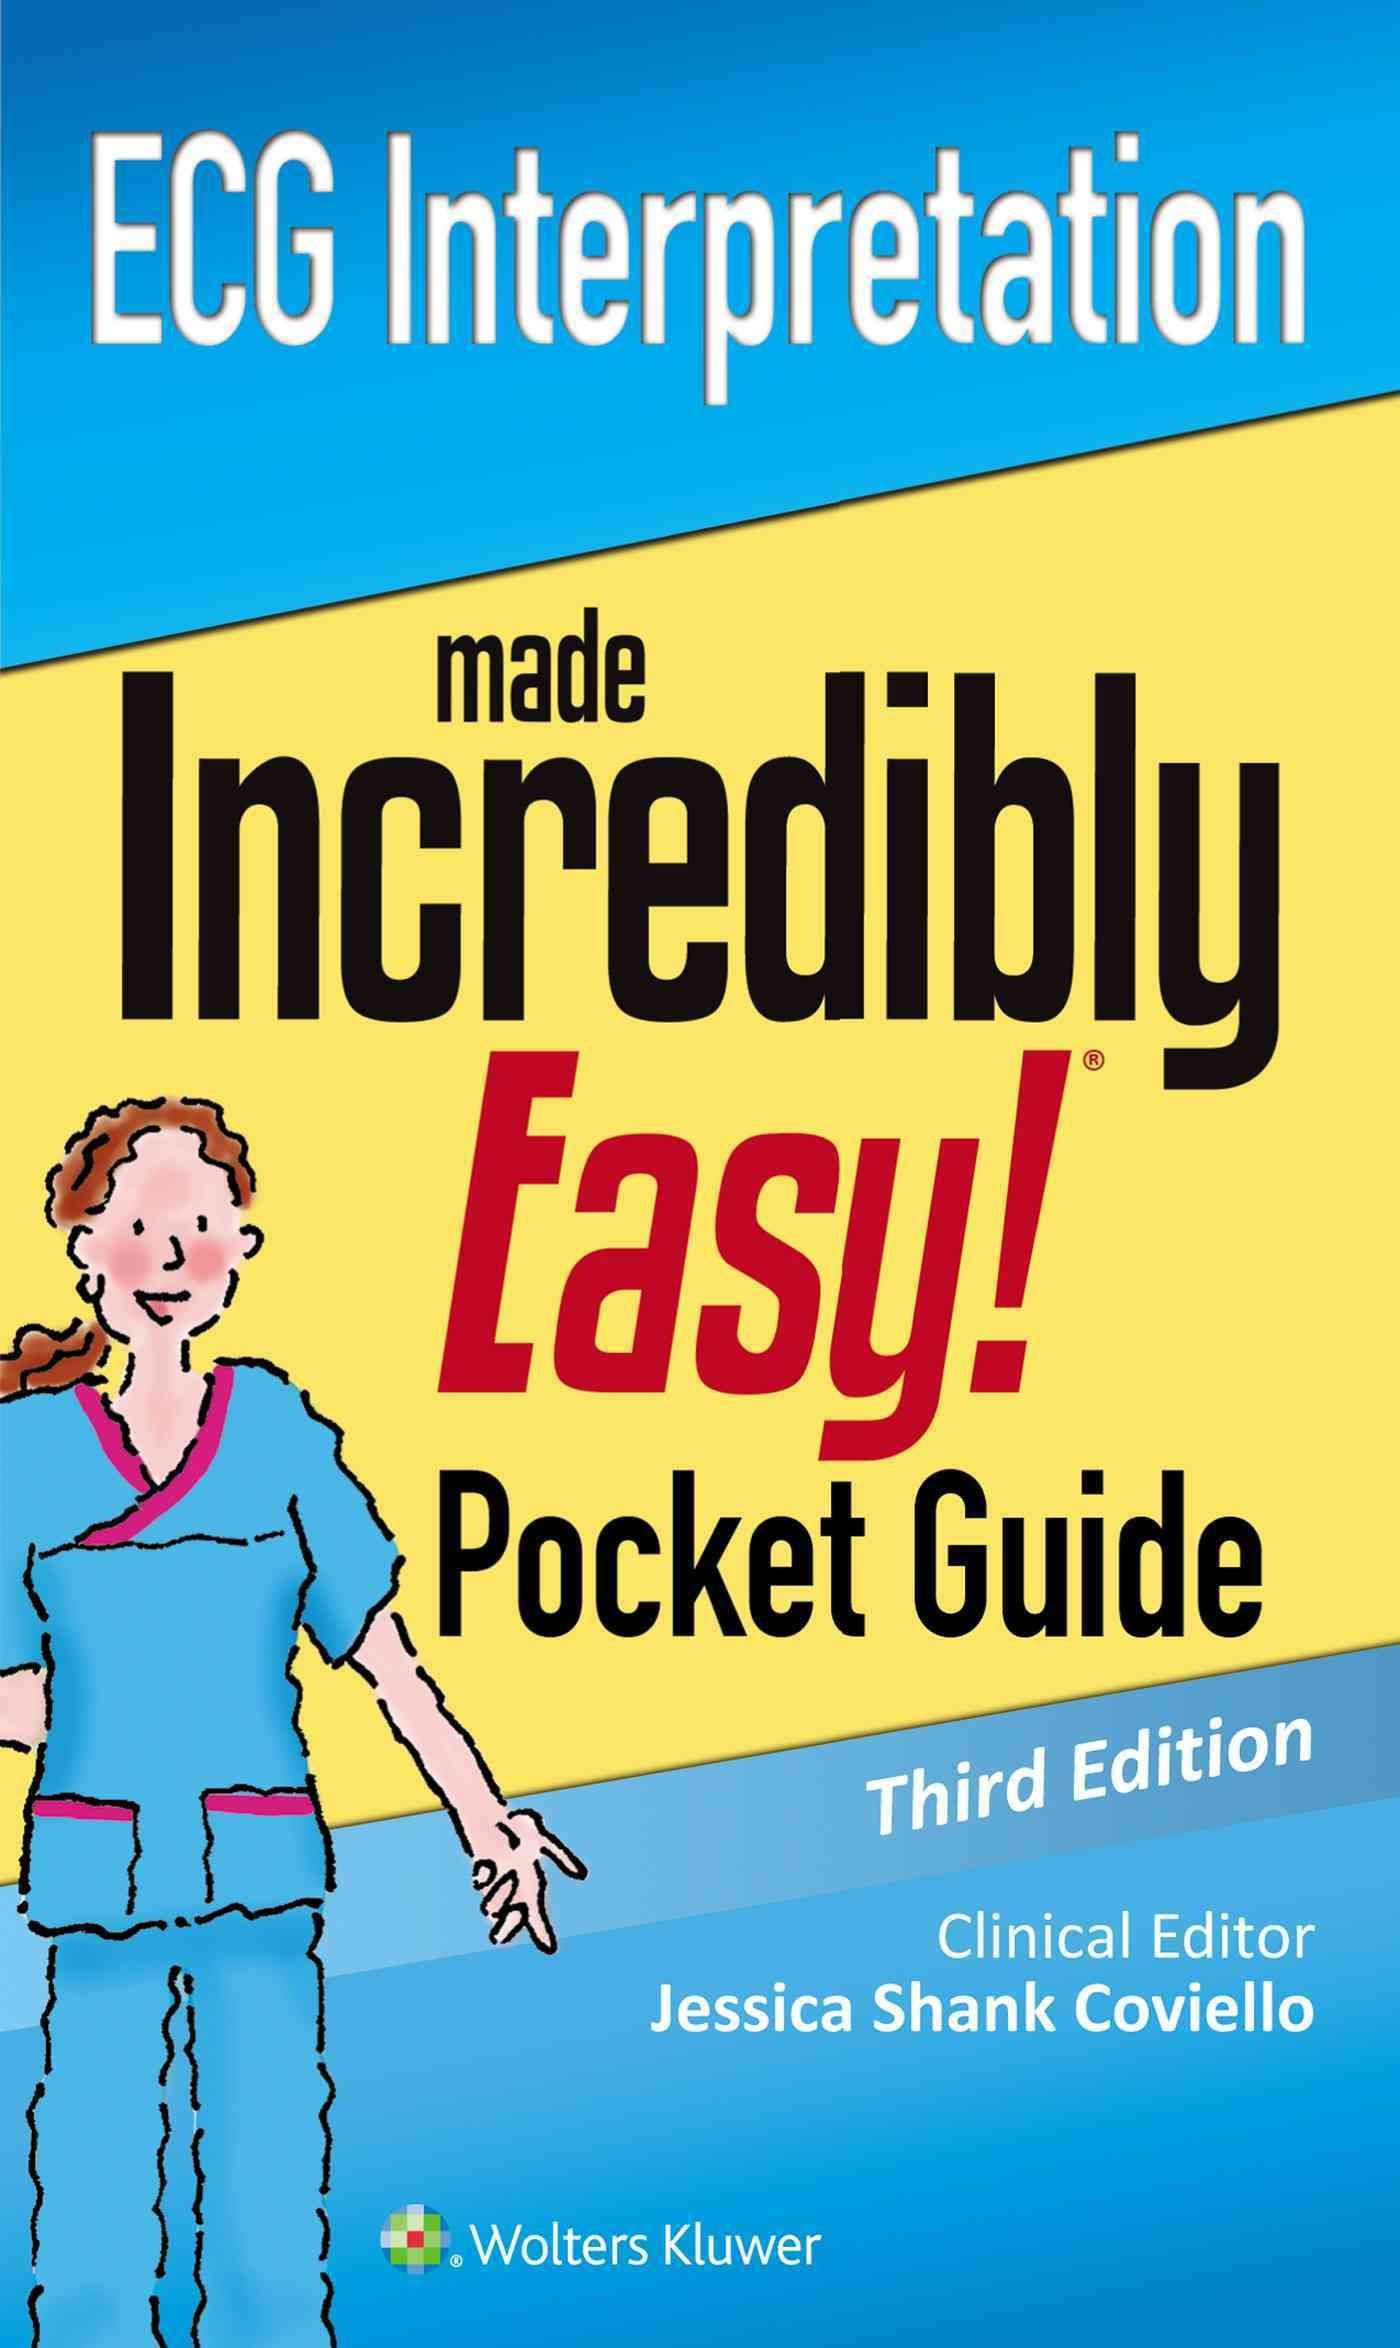 ECG Interpretation: An Incredibly Easy Pocket Guide